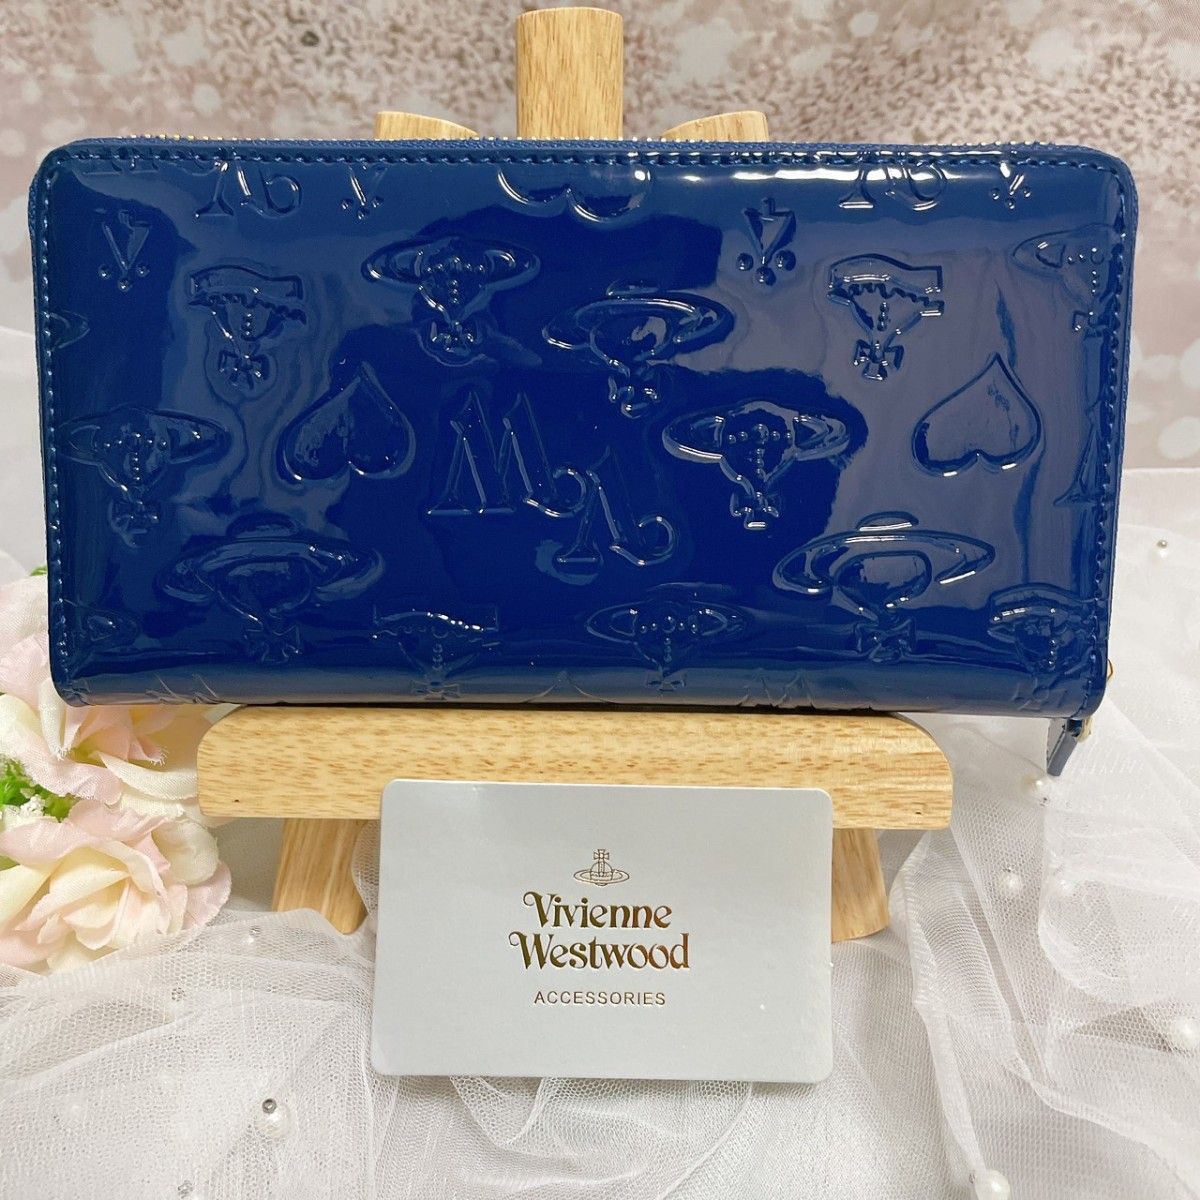 【24時間以内発送】Vivienne Westwood 長財布 ブルー エナメル  ラウンドファスナー 財布